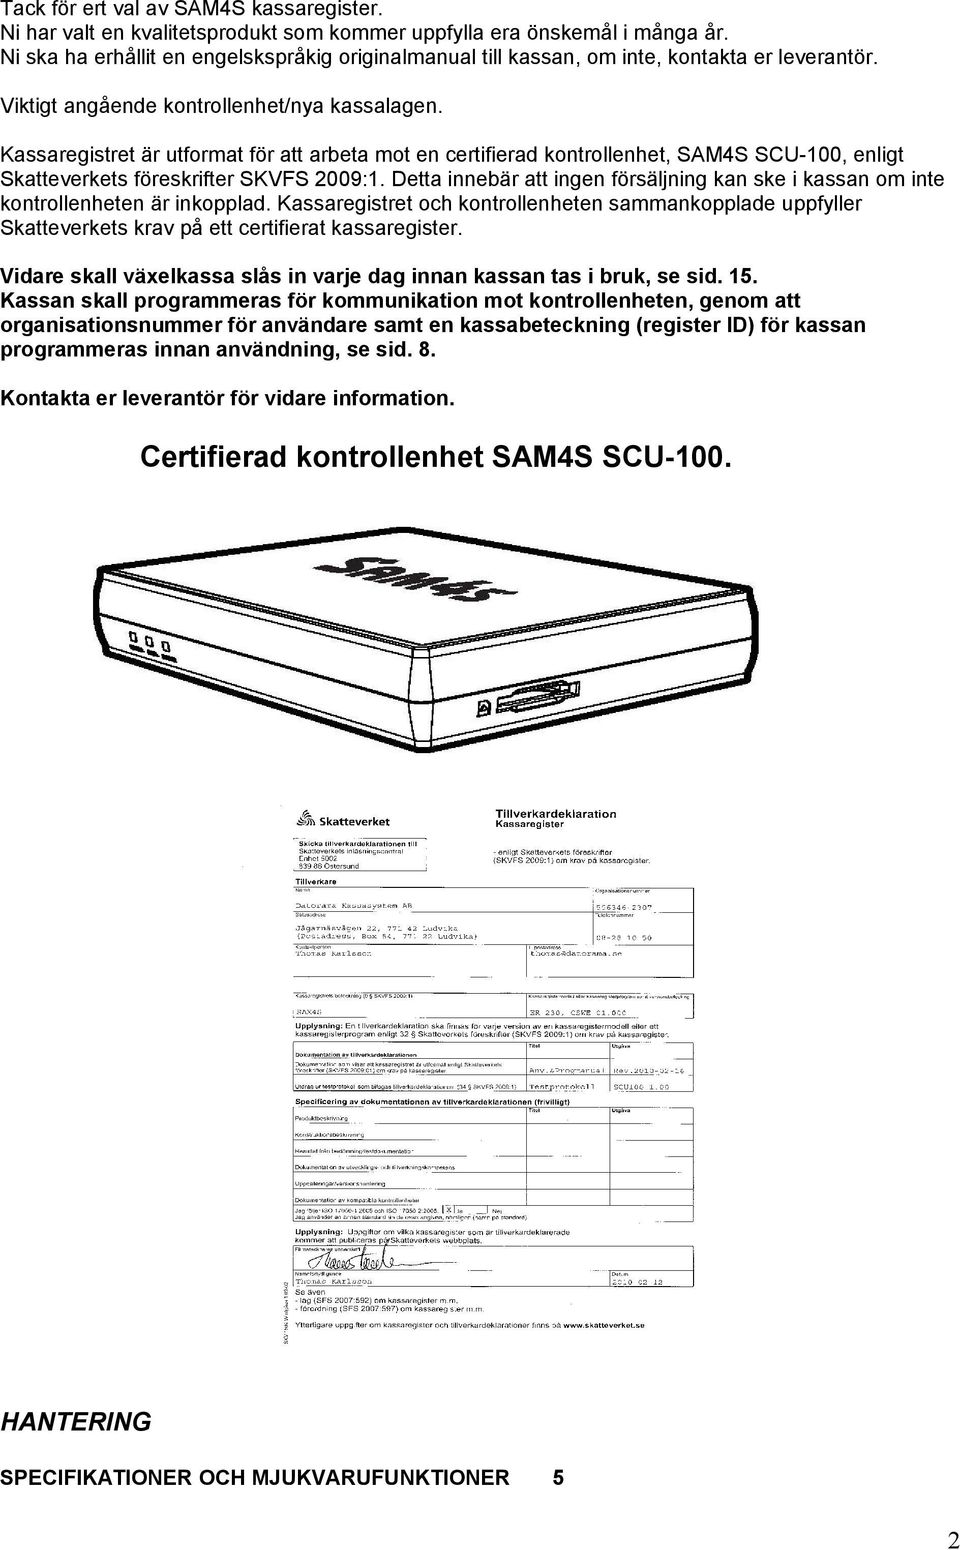 Kassaregistret är utformat för att arbeta mot en certifierad kontrollenhet, SAM4S SCU-100, enligt Skatteverkets föreskrifter SKVFS 2009:1.